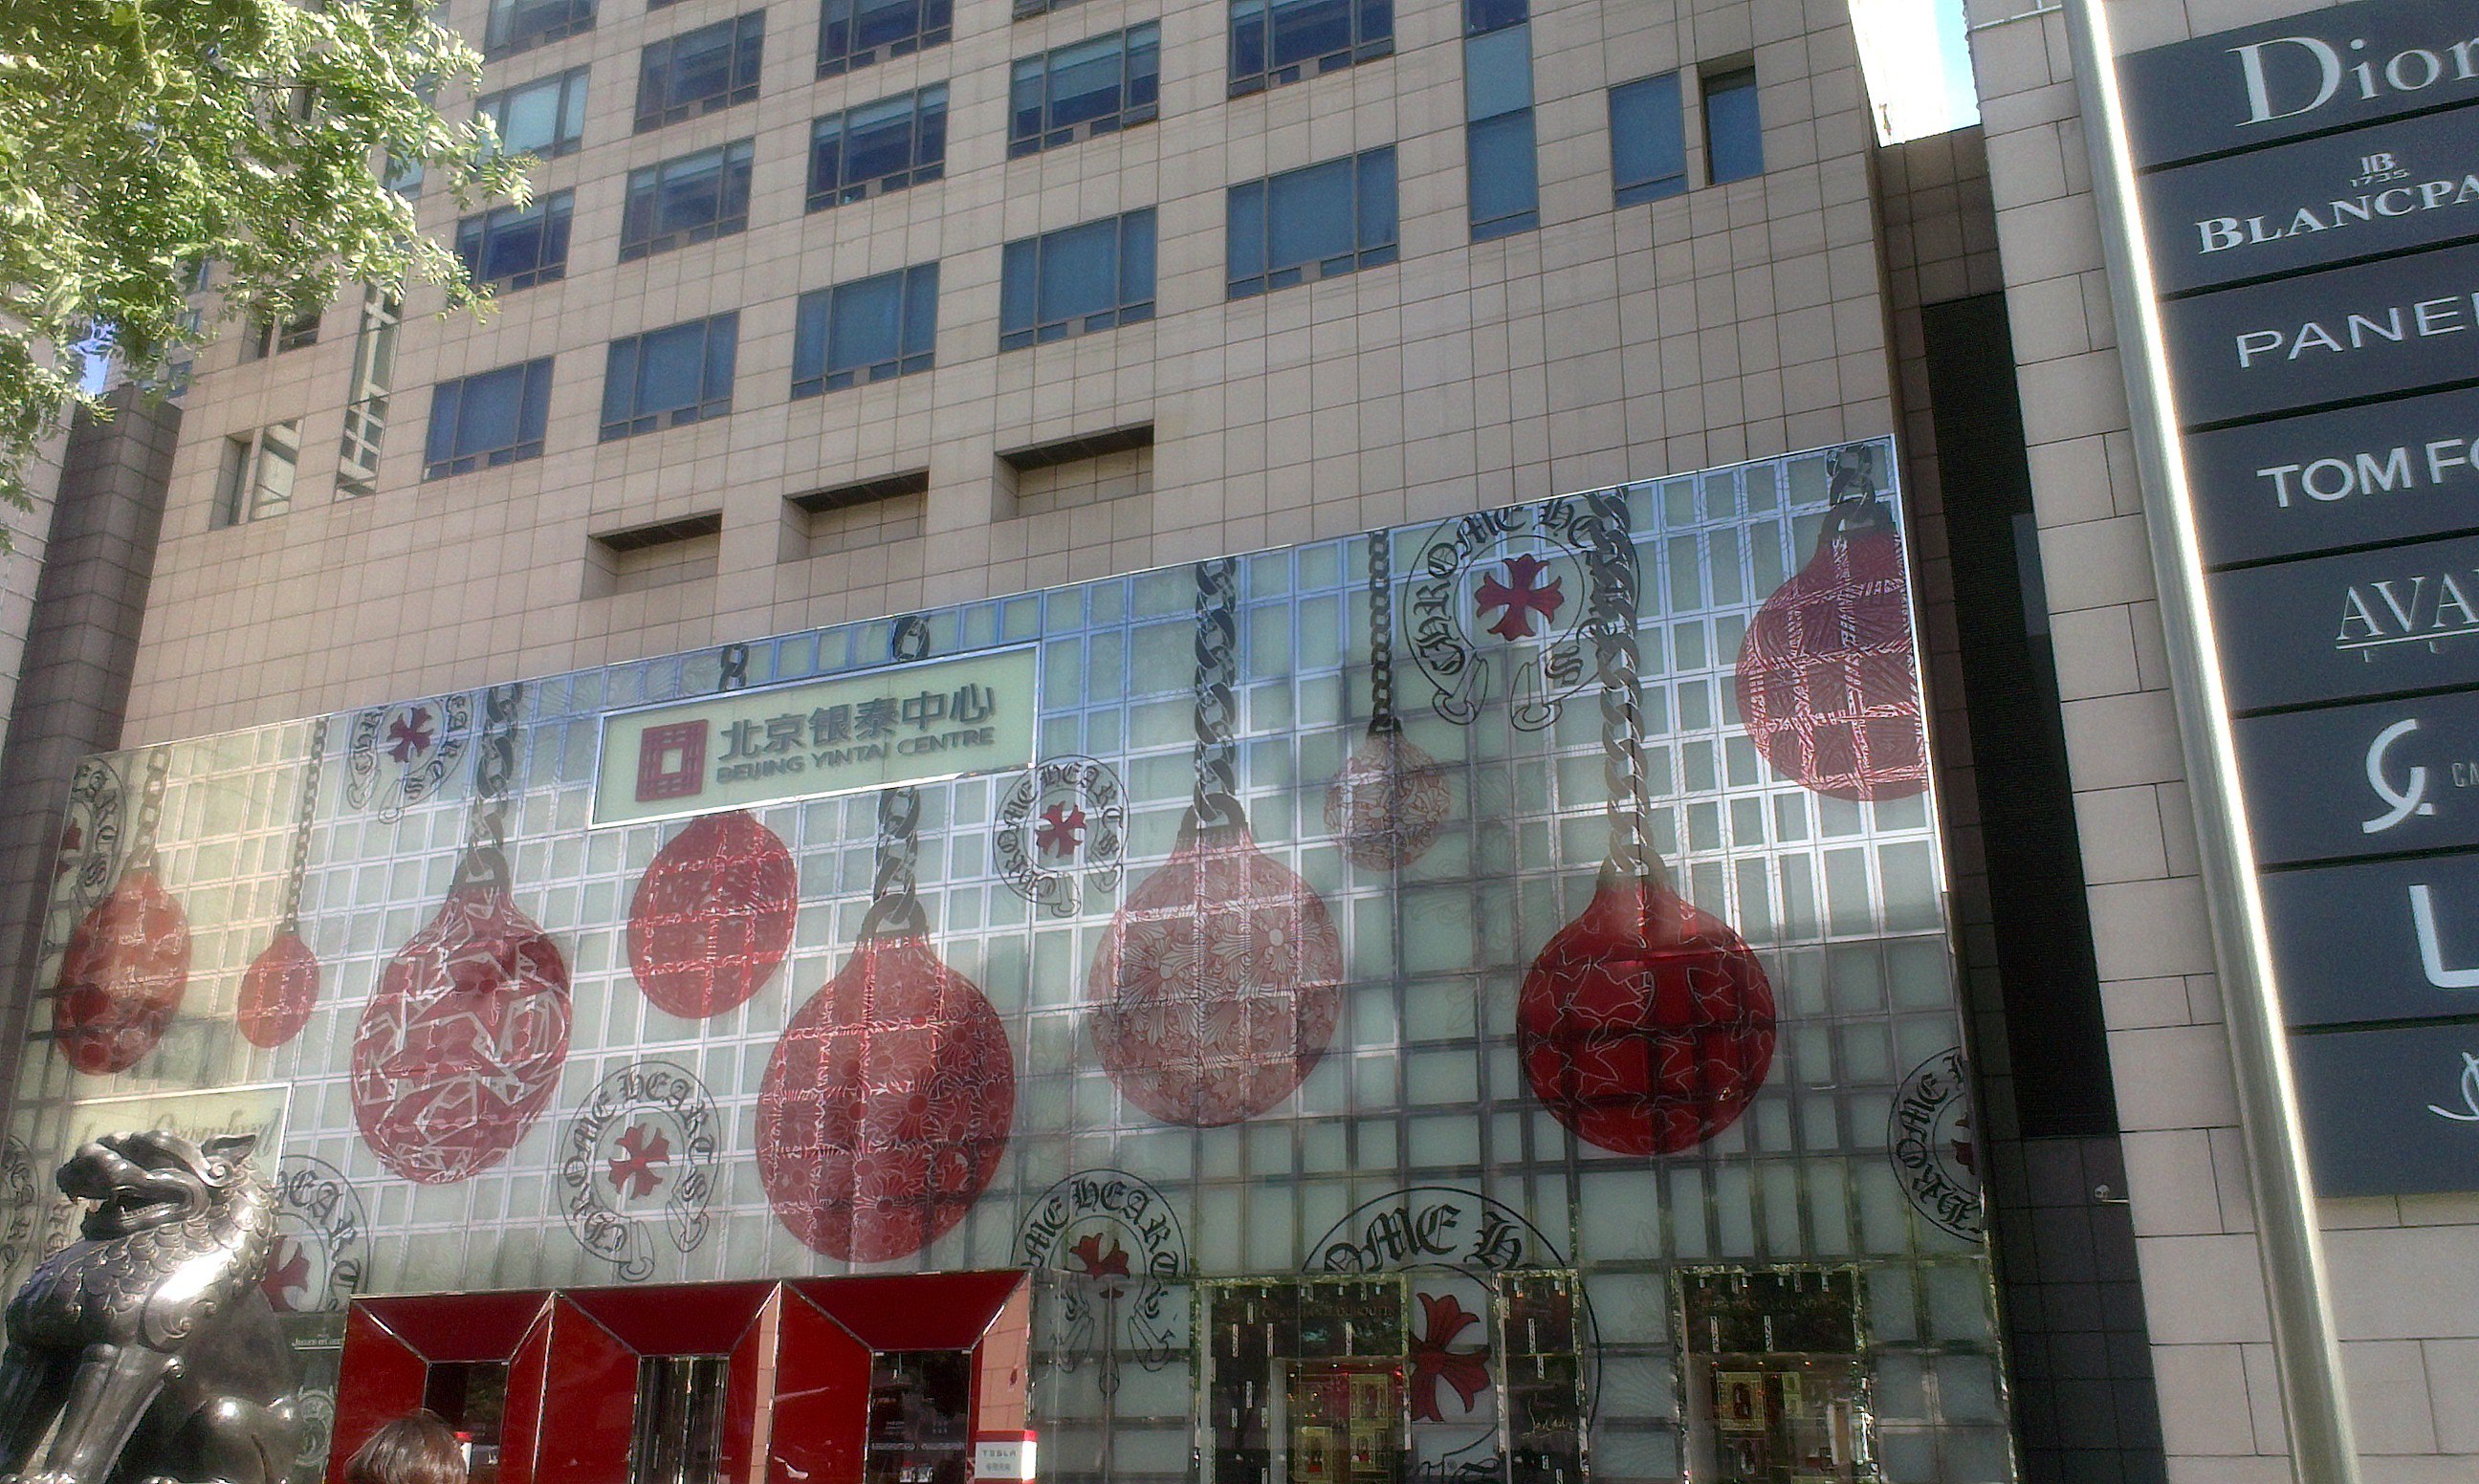 【携程攻略】北京银泰百货(大红门西路)购物,位置得天独厚,在国贸桥边